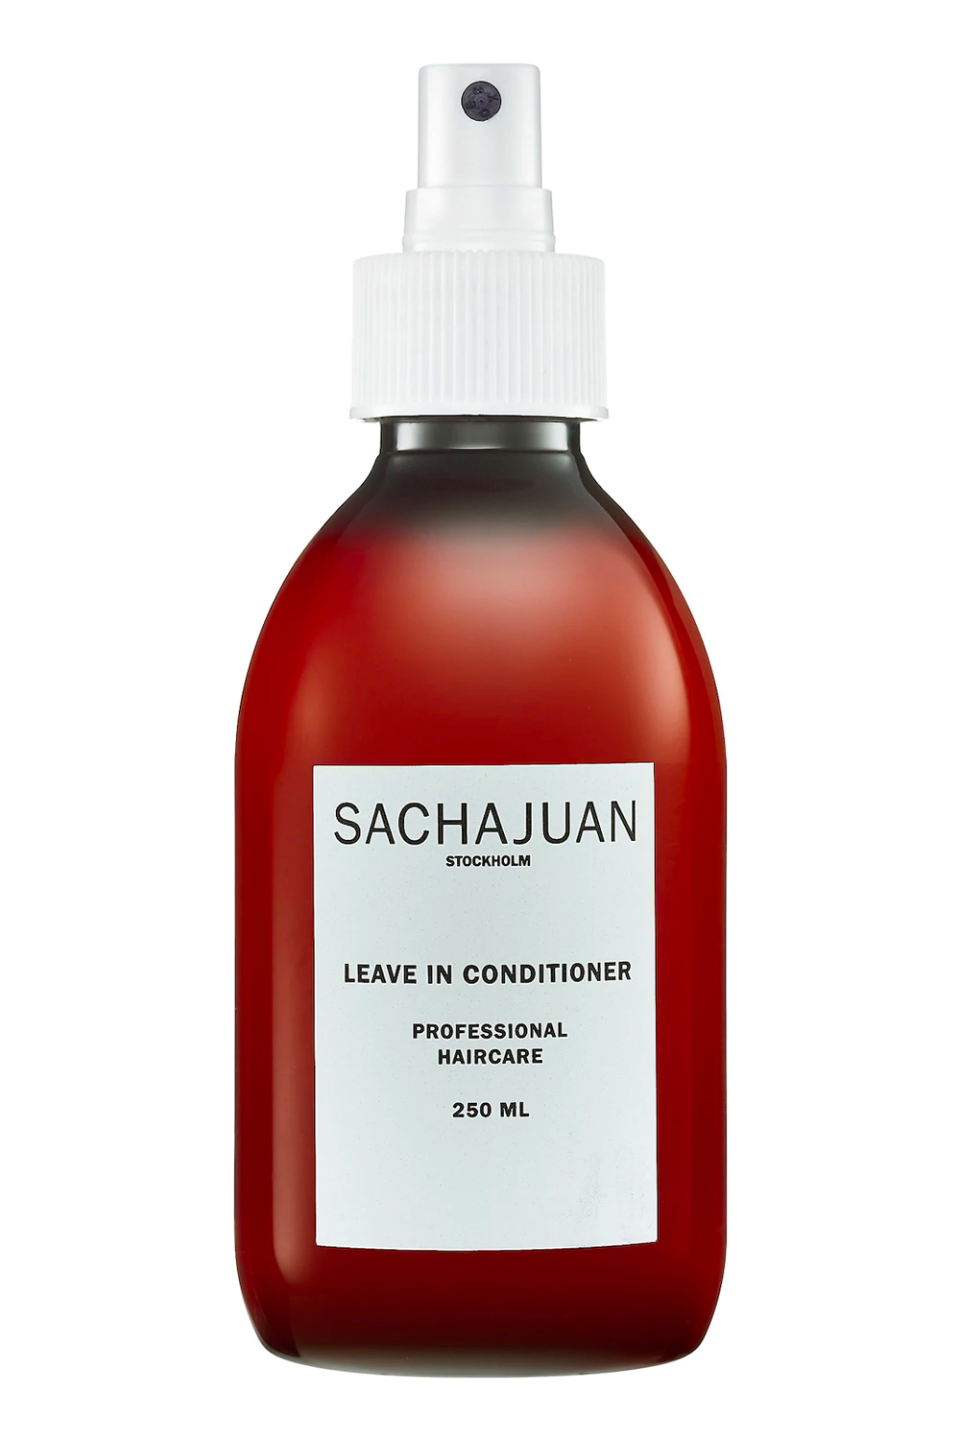 5) Sachajuan Leave In Conditioner